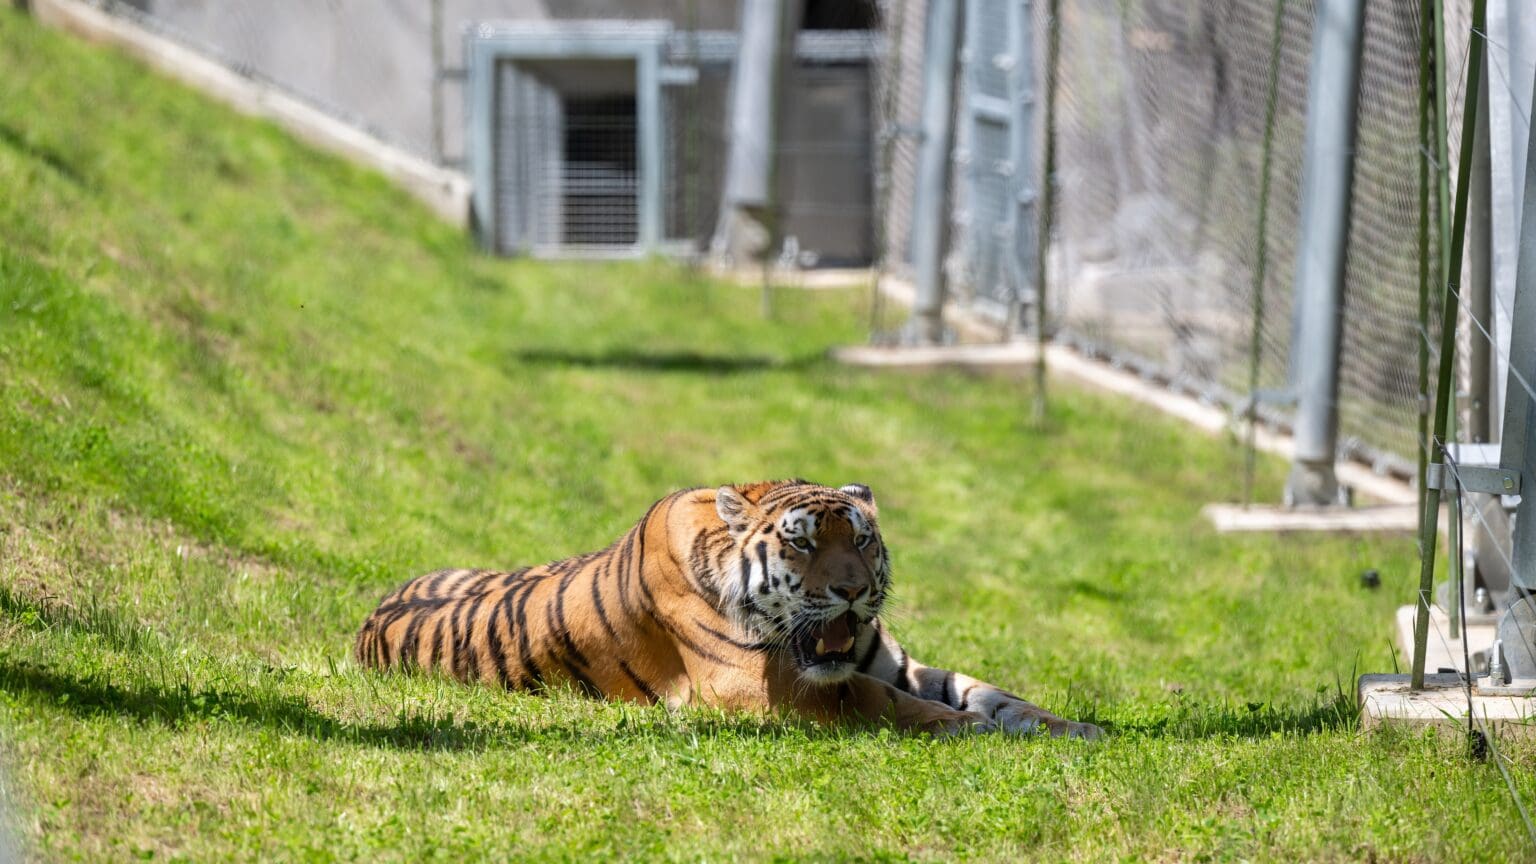 Veszprém Zoo Unveils New Big Cat Enclosure